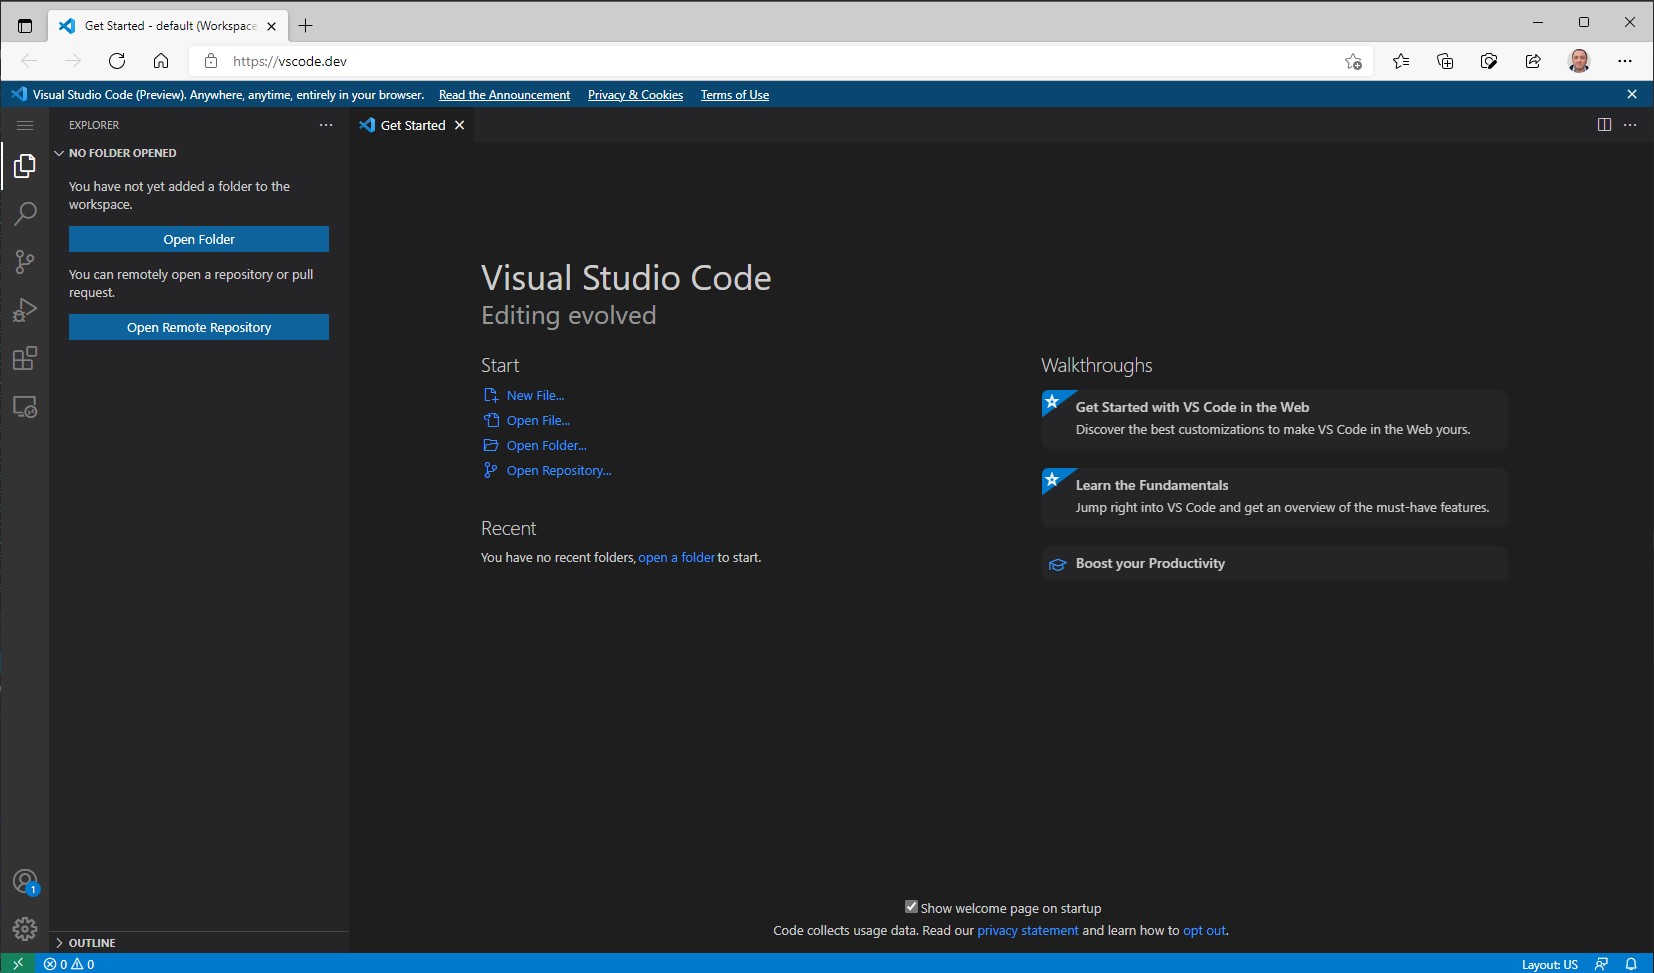 O chestie mișto: editorul Visual Studio Code are acum și o variantă online, putând fi folosit pentru editarea rapidă a codului.